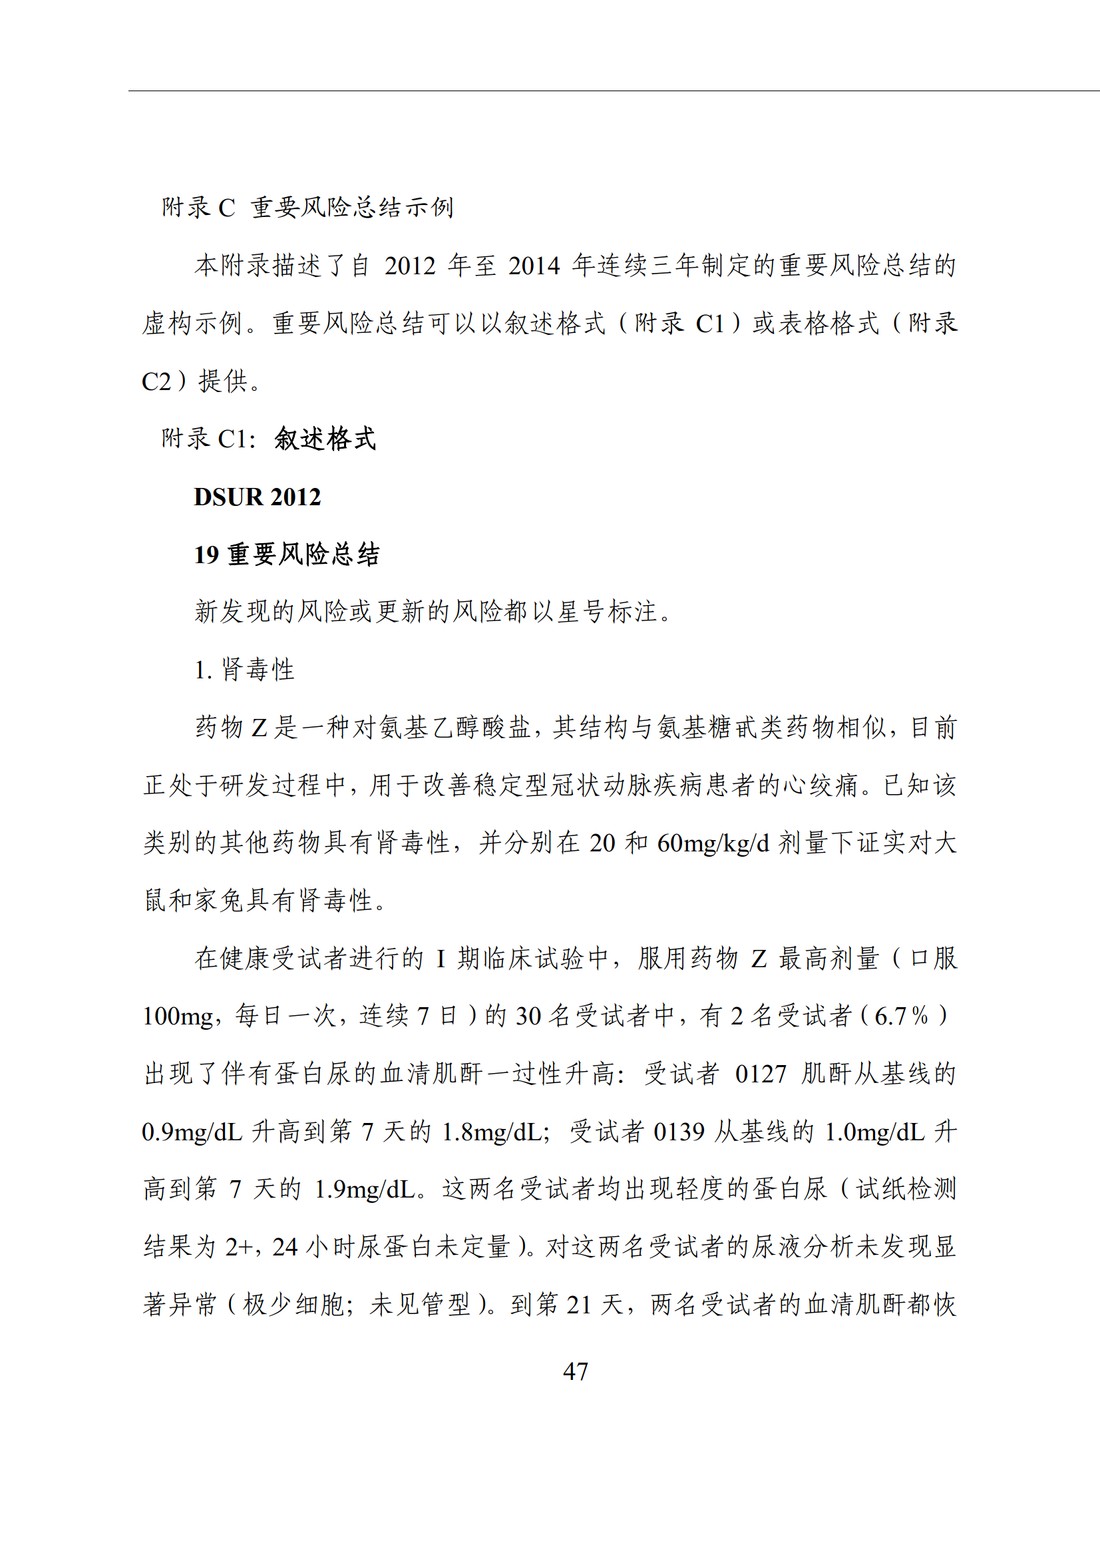 E2F 研发期间安全性更新报告(中文翻译公开征求意见稿)_52.jpg